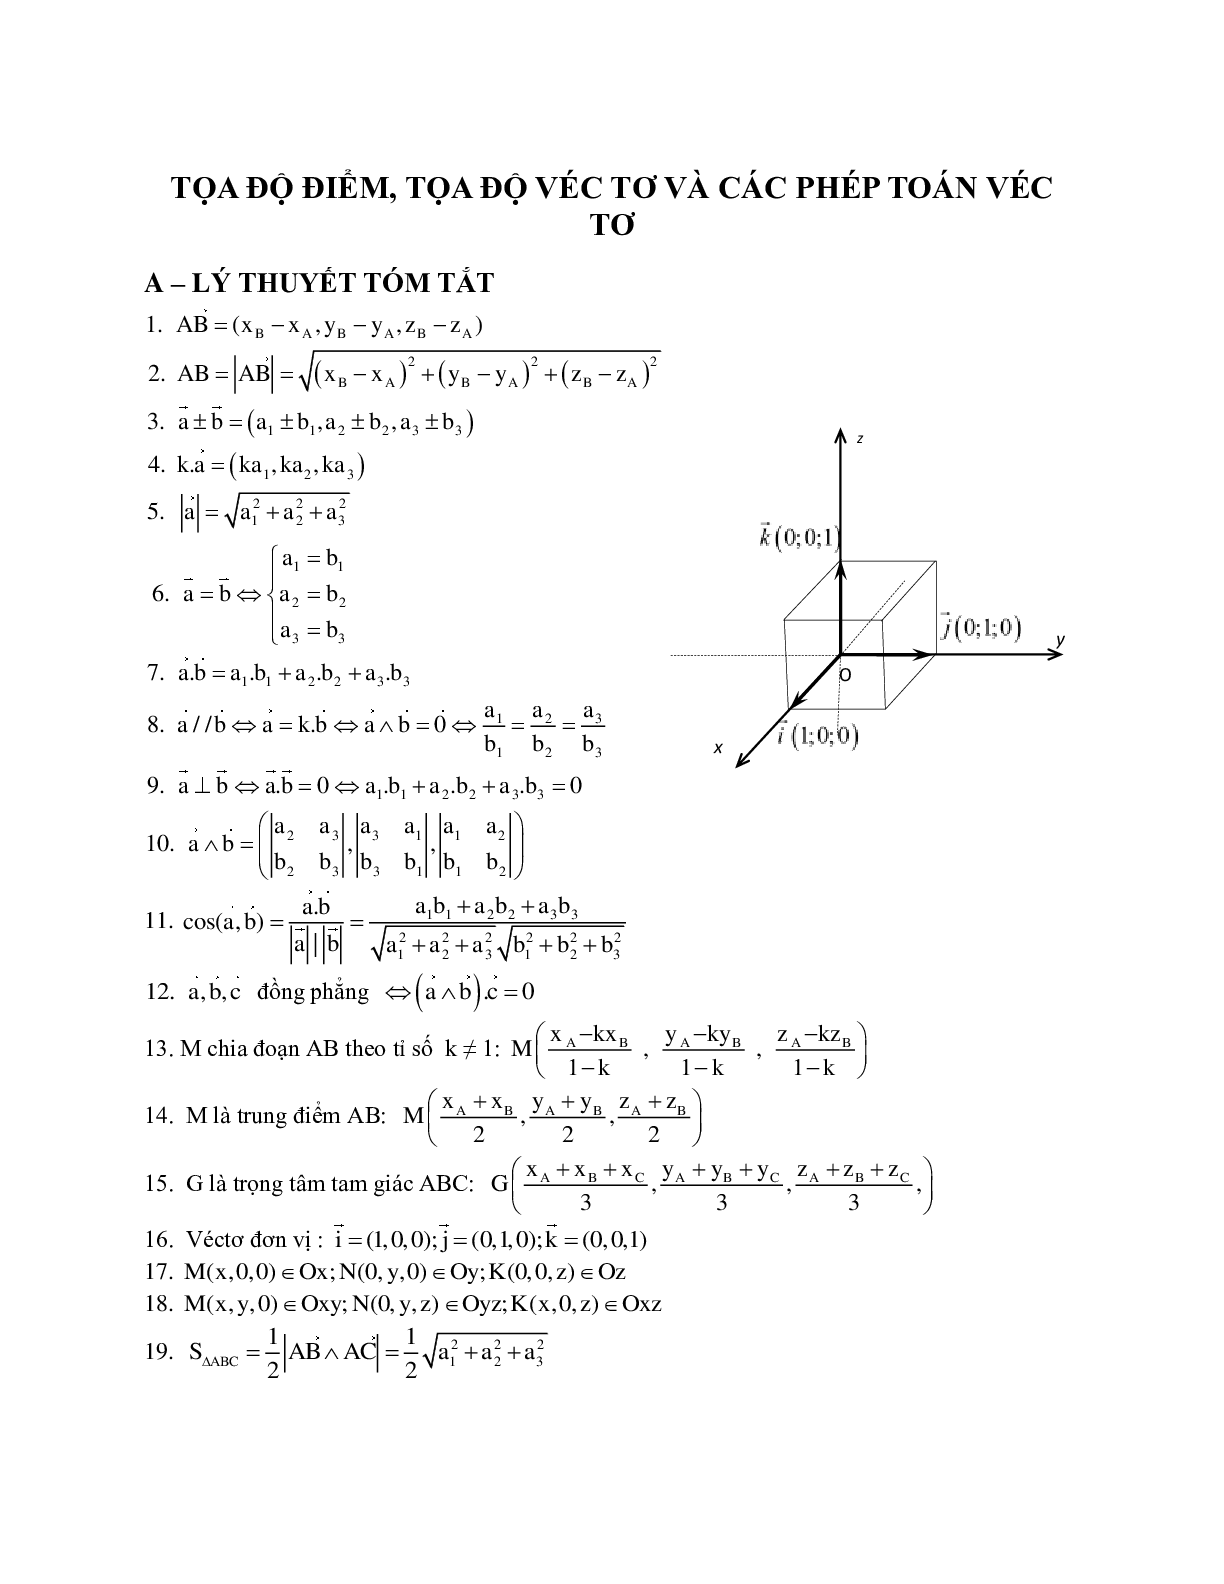 Tọa độ điểm, tọa độ vecto và các phép toán vecto trong không gian (trang 1)